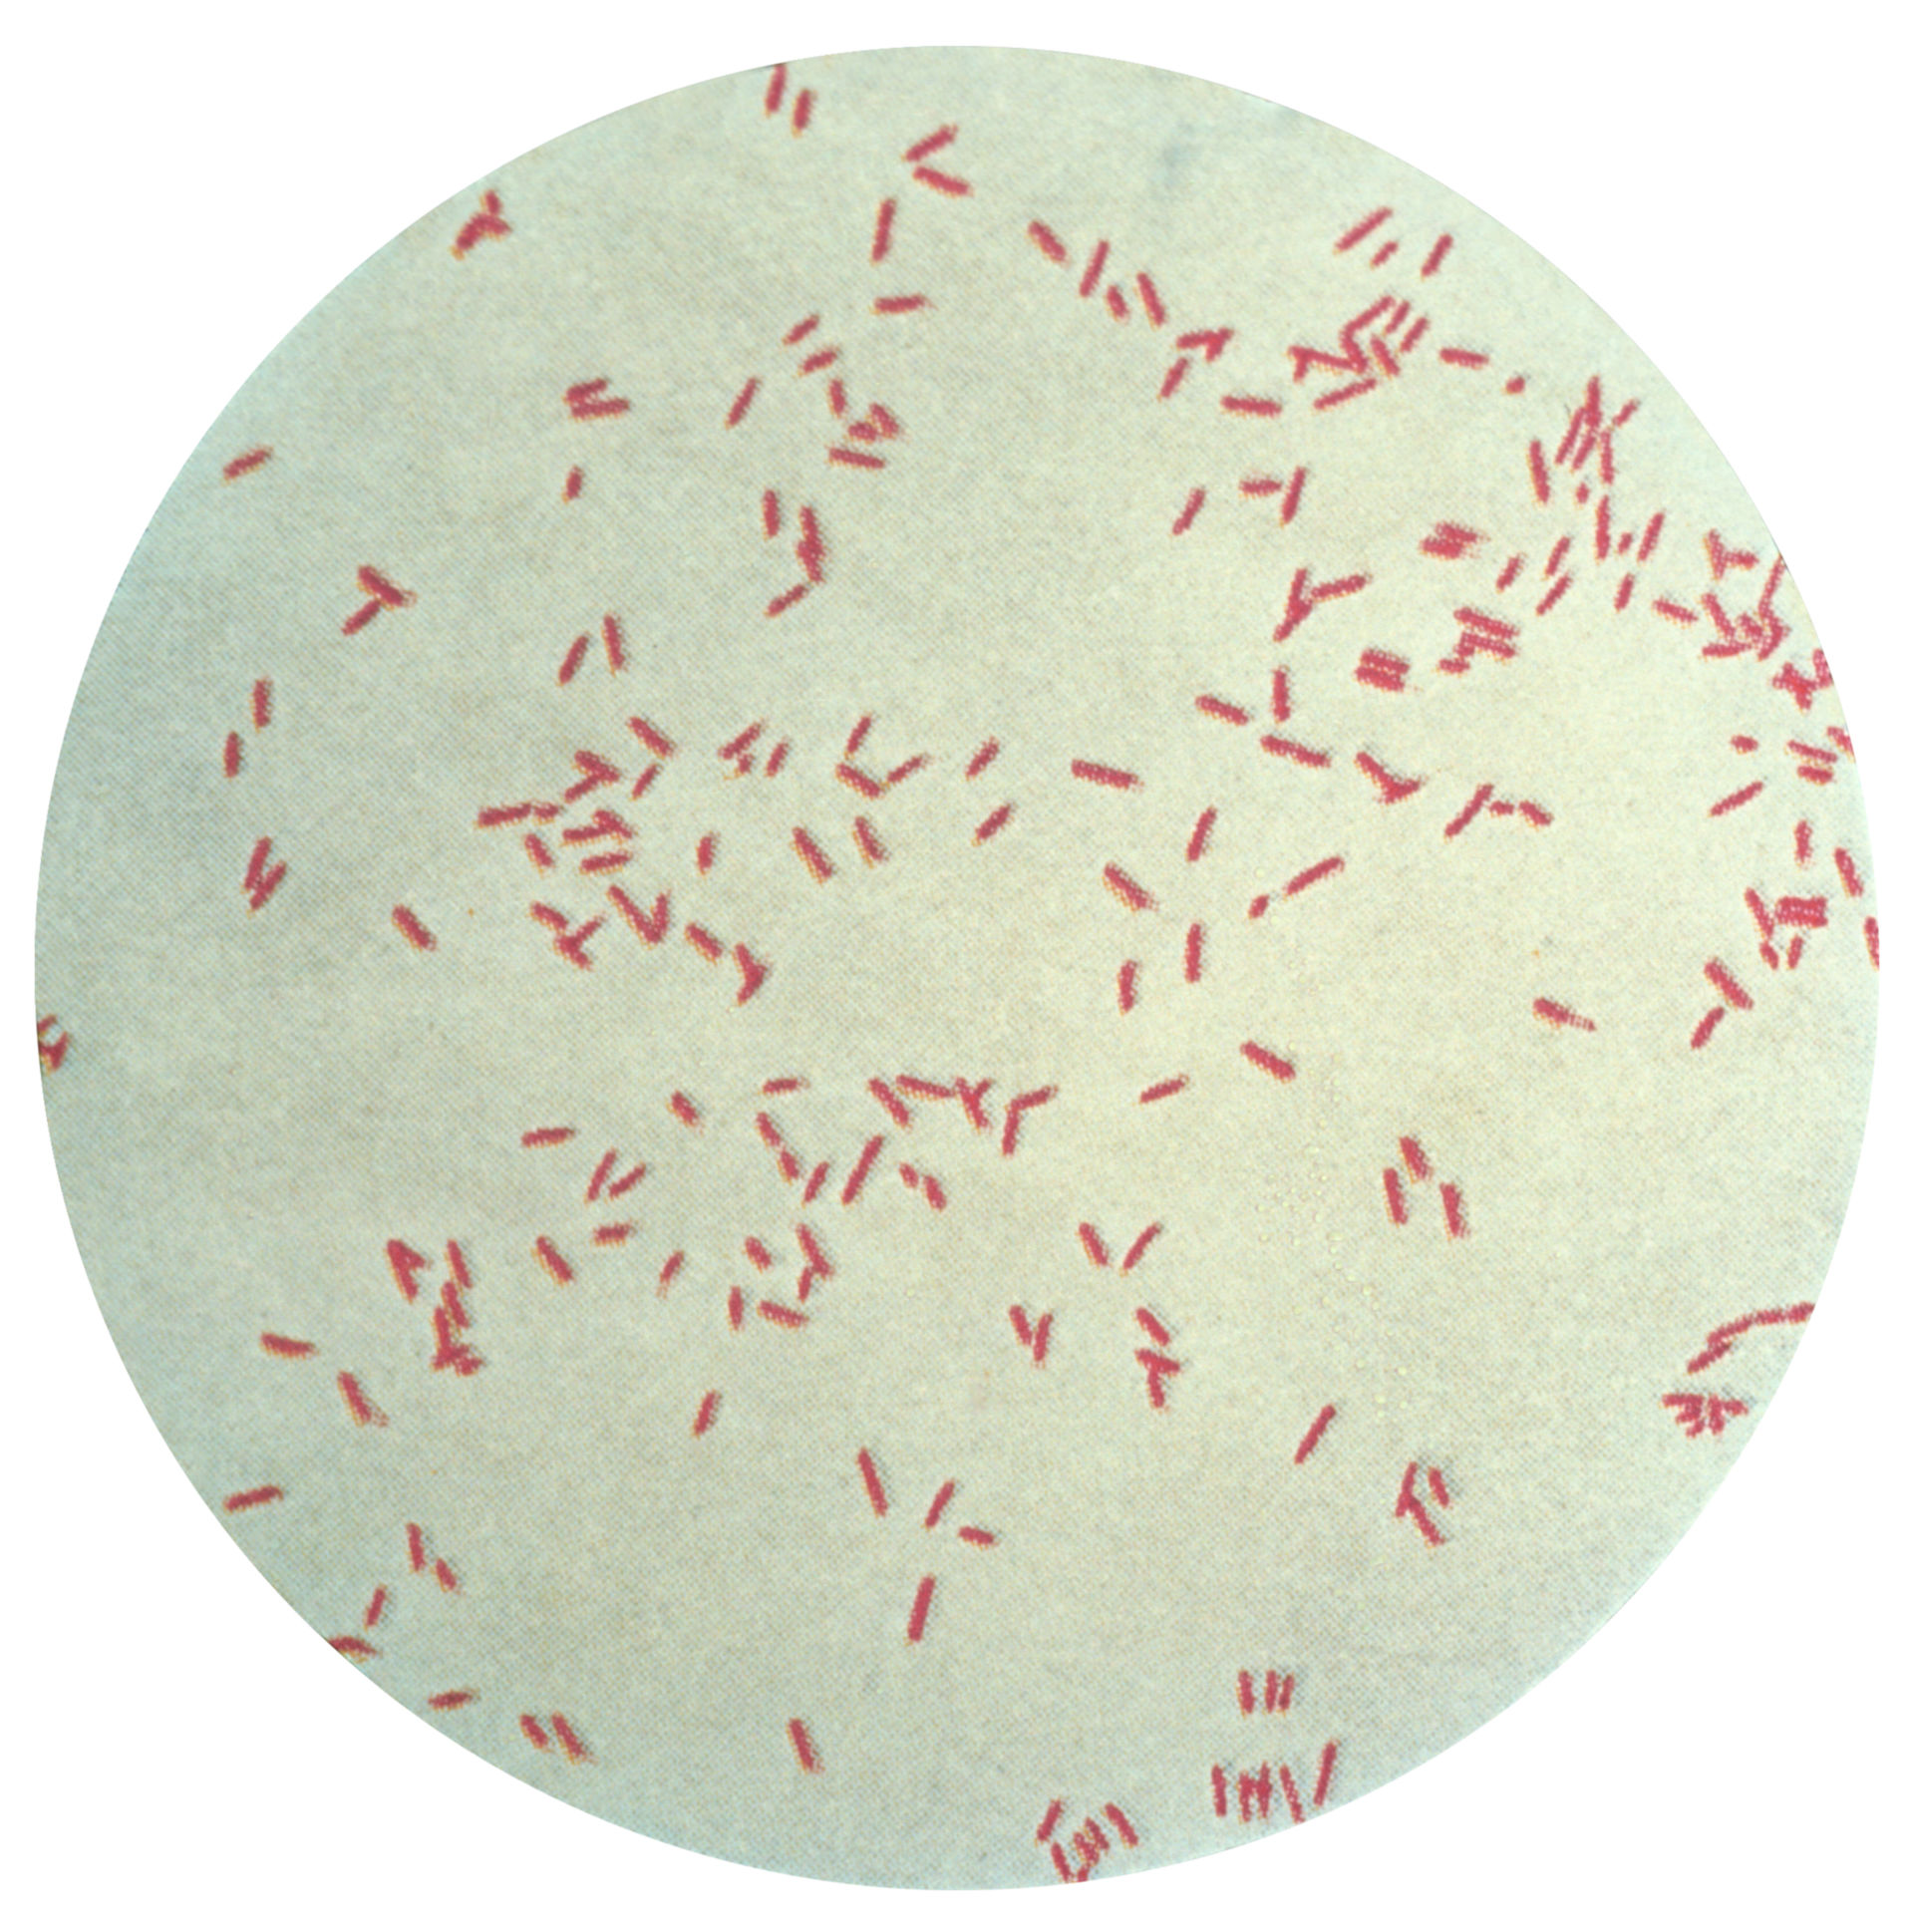 Pseudomonas aeruginosa (Bacillus pyocyaneus)